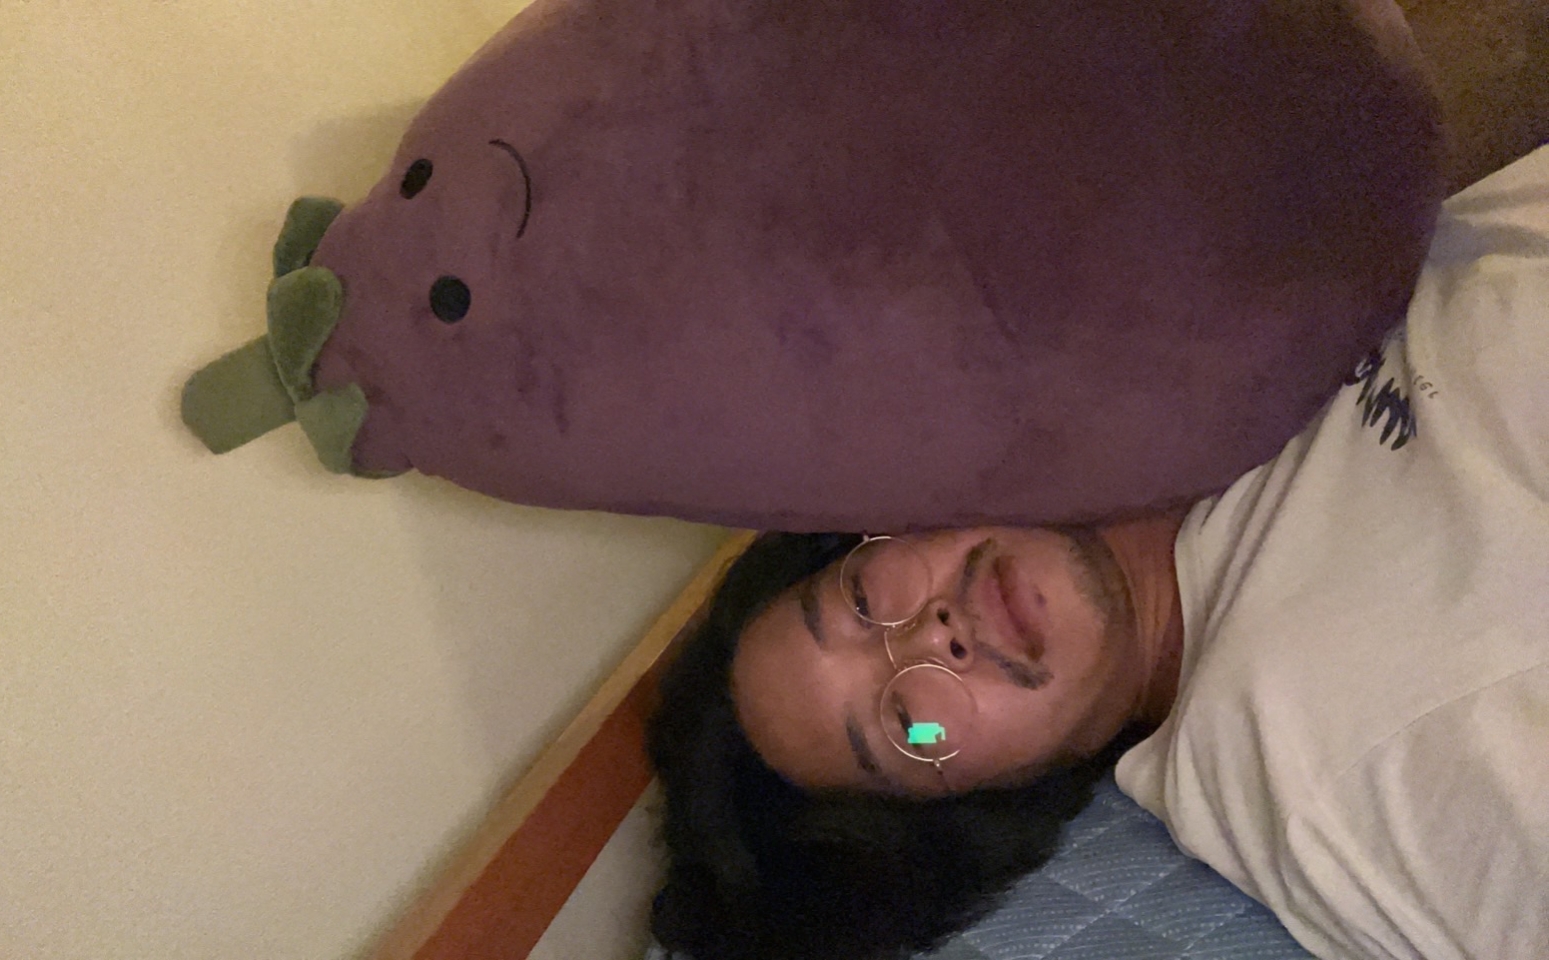 DJ Nasutaro laying down with a large eggplant stuffed animal